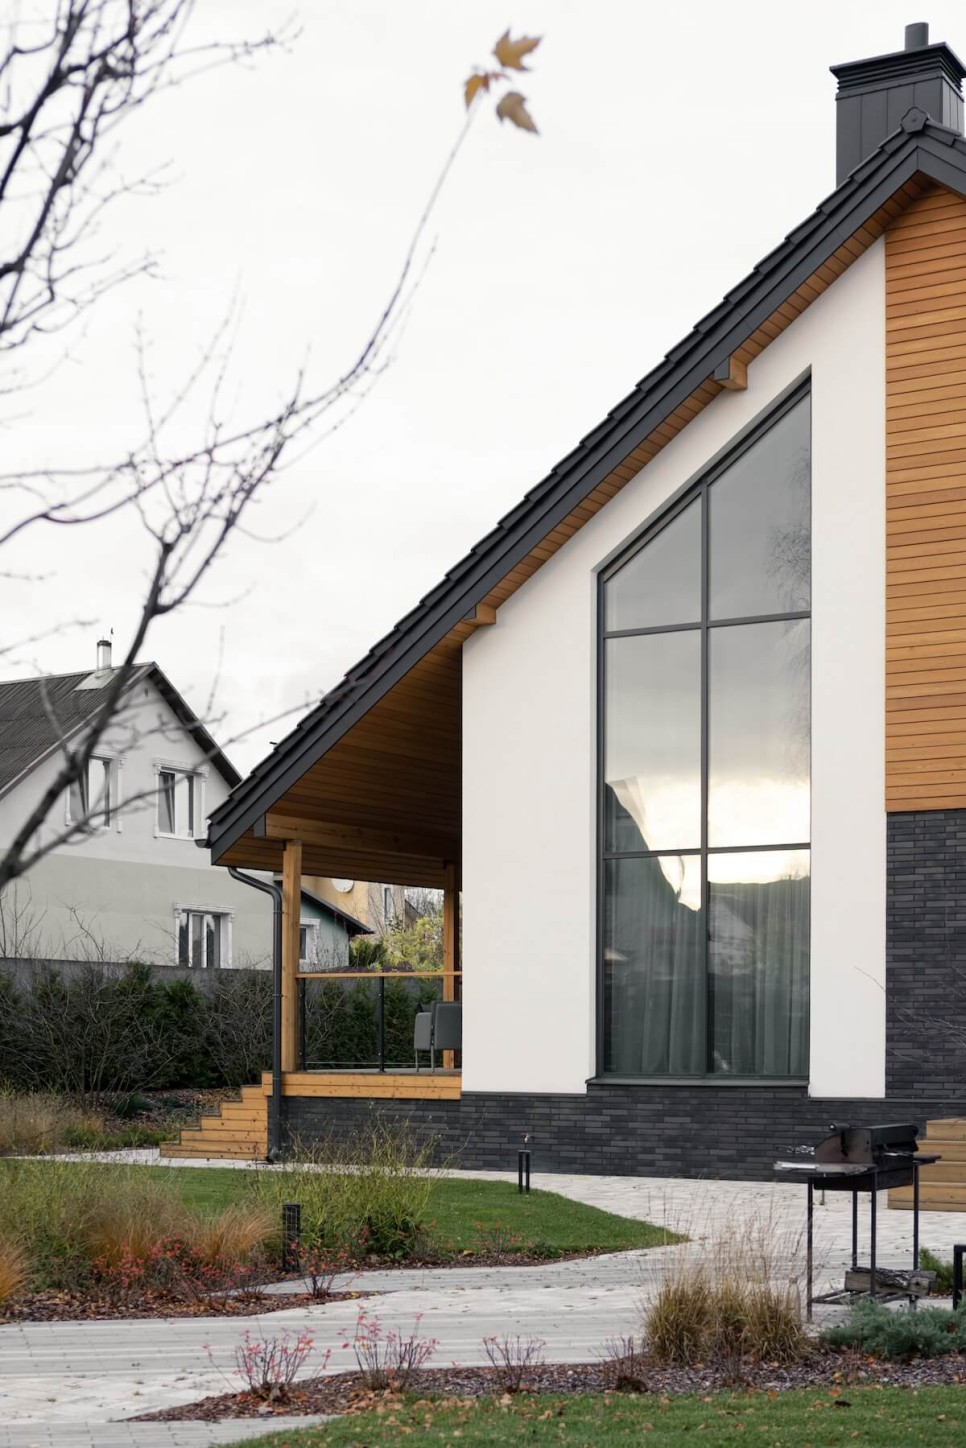 목가적인 자연스러움과 도시적인 모던함이 조화를 이룬 교외 주택, Wood & Air House by Skar Design